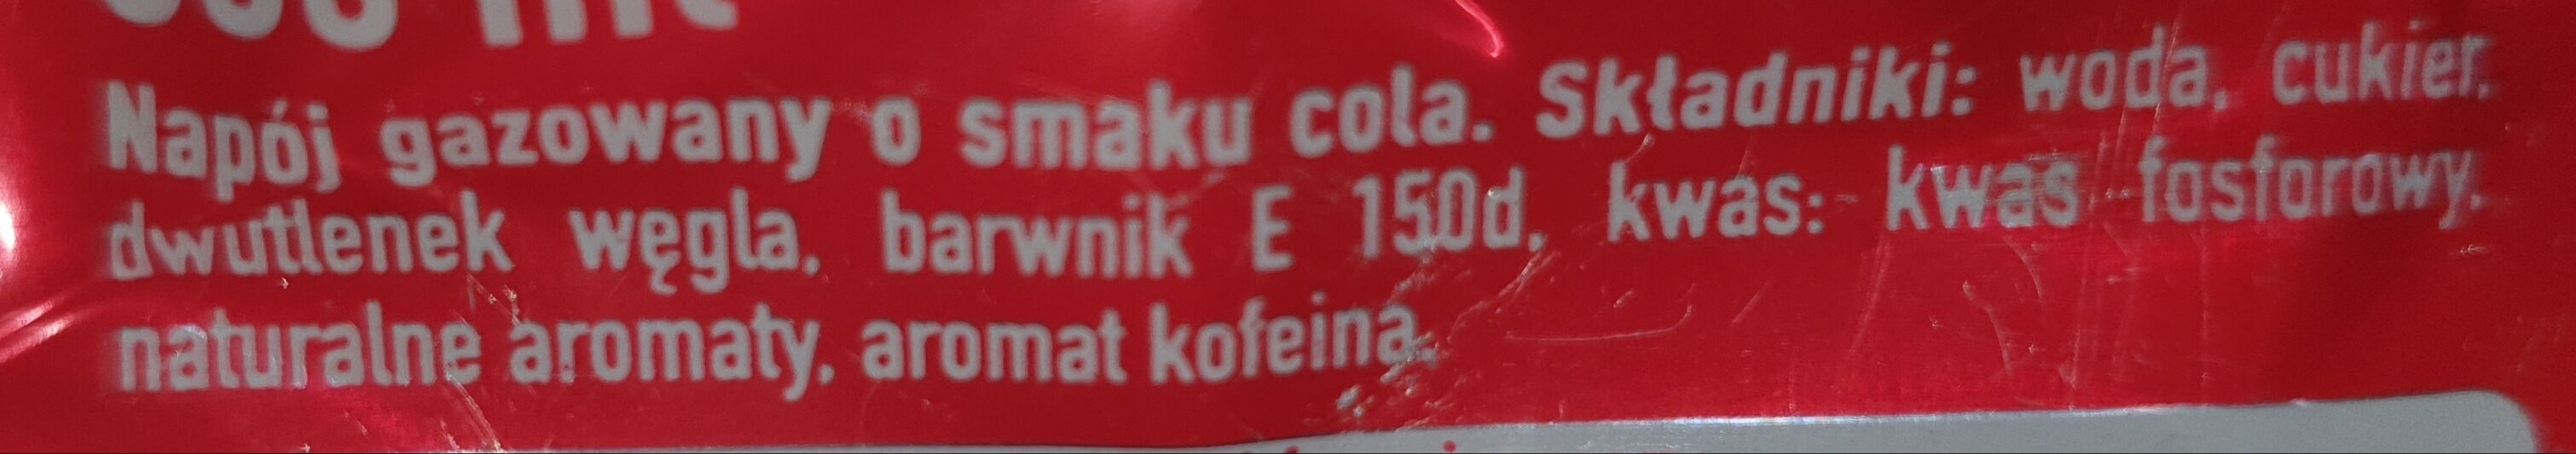 Coca-Cola - napój gazowany o smaku cola - Ingredientes - pl